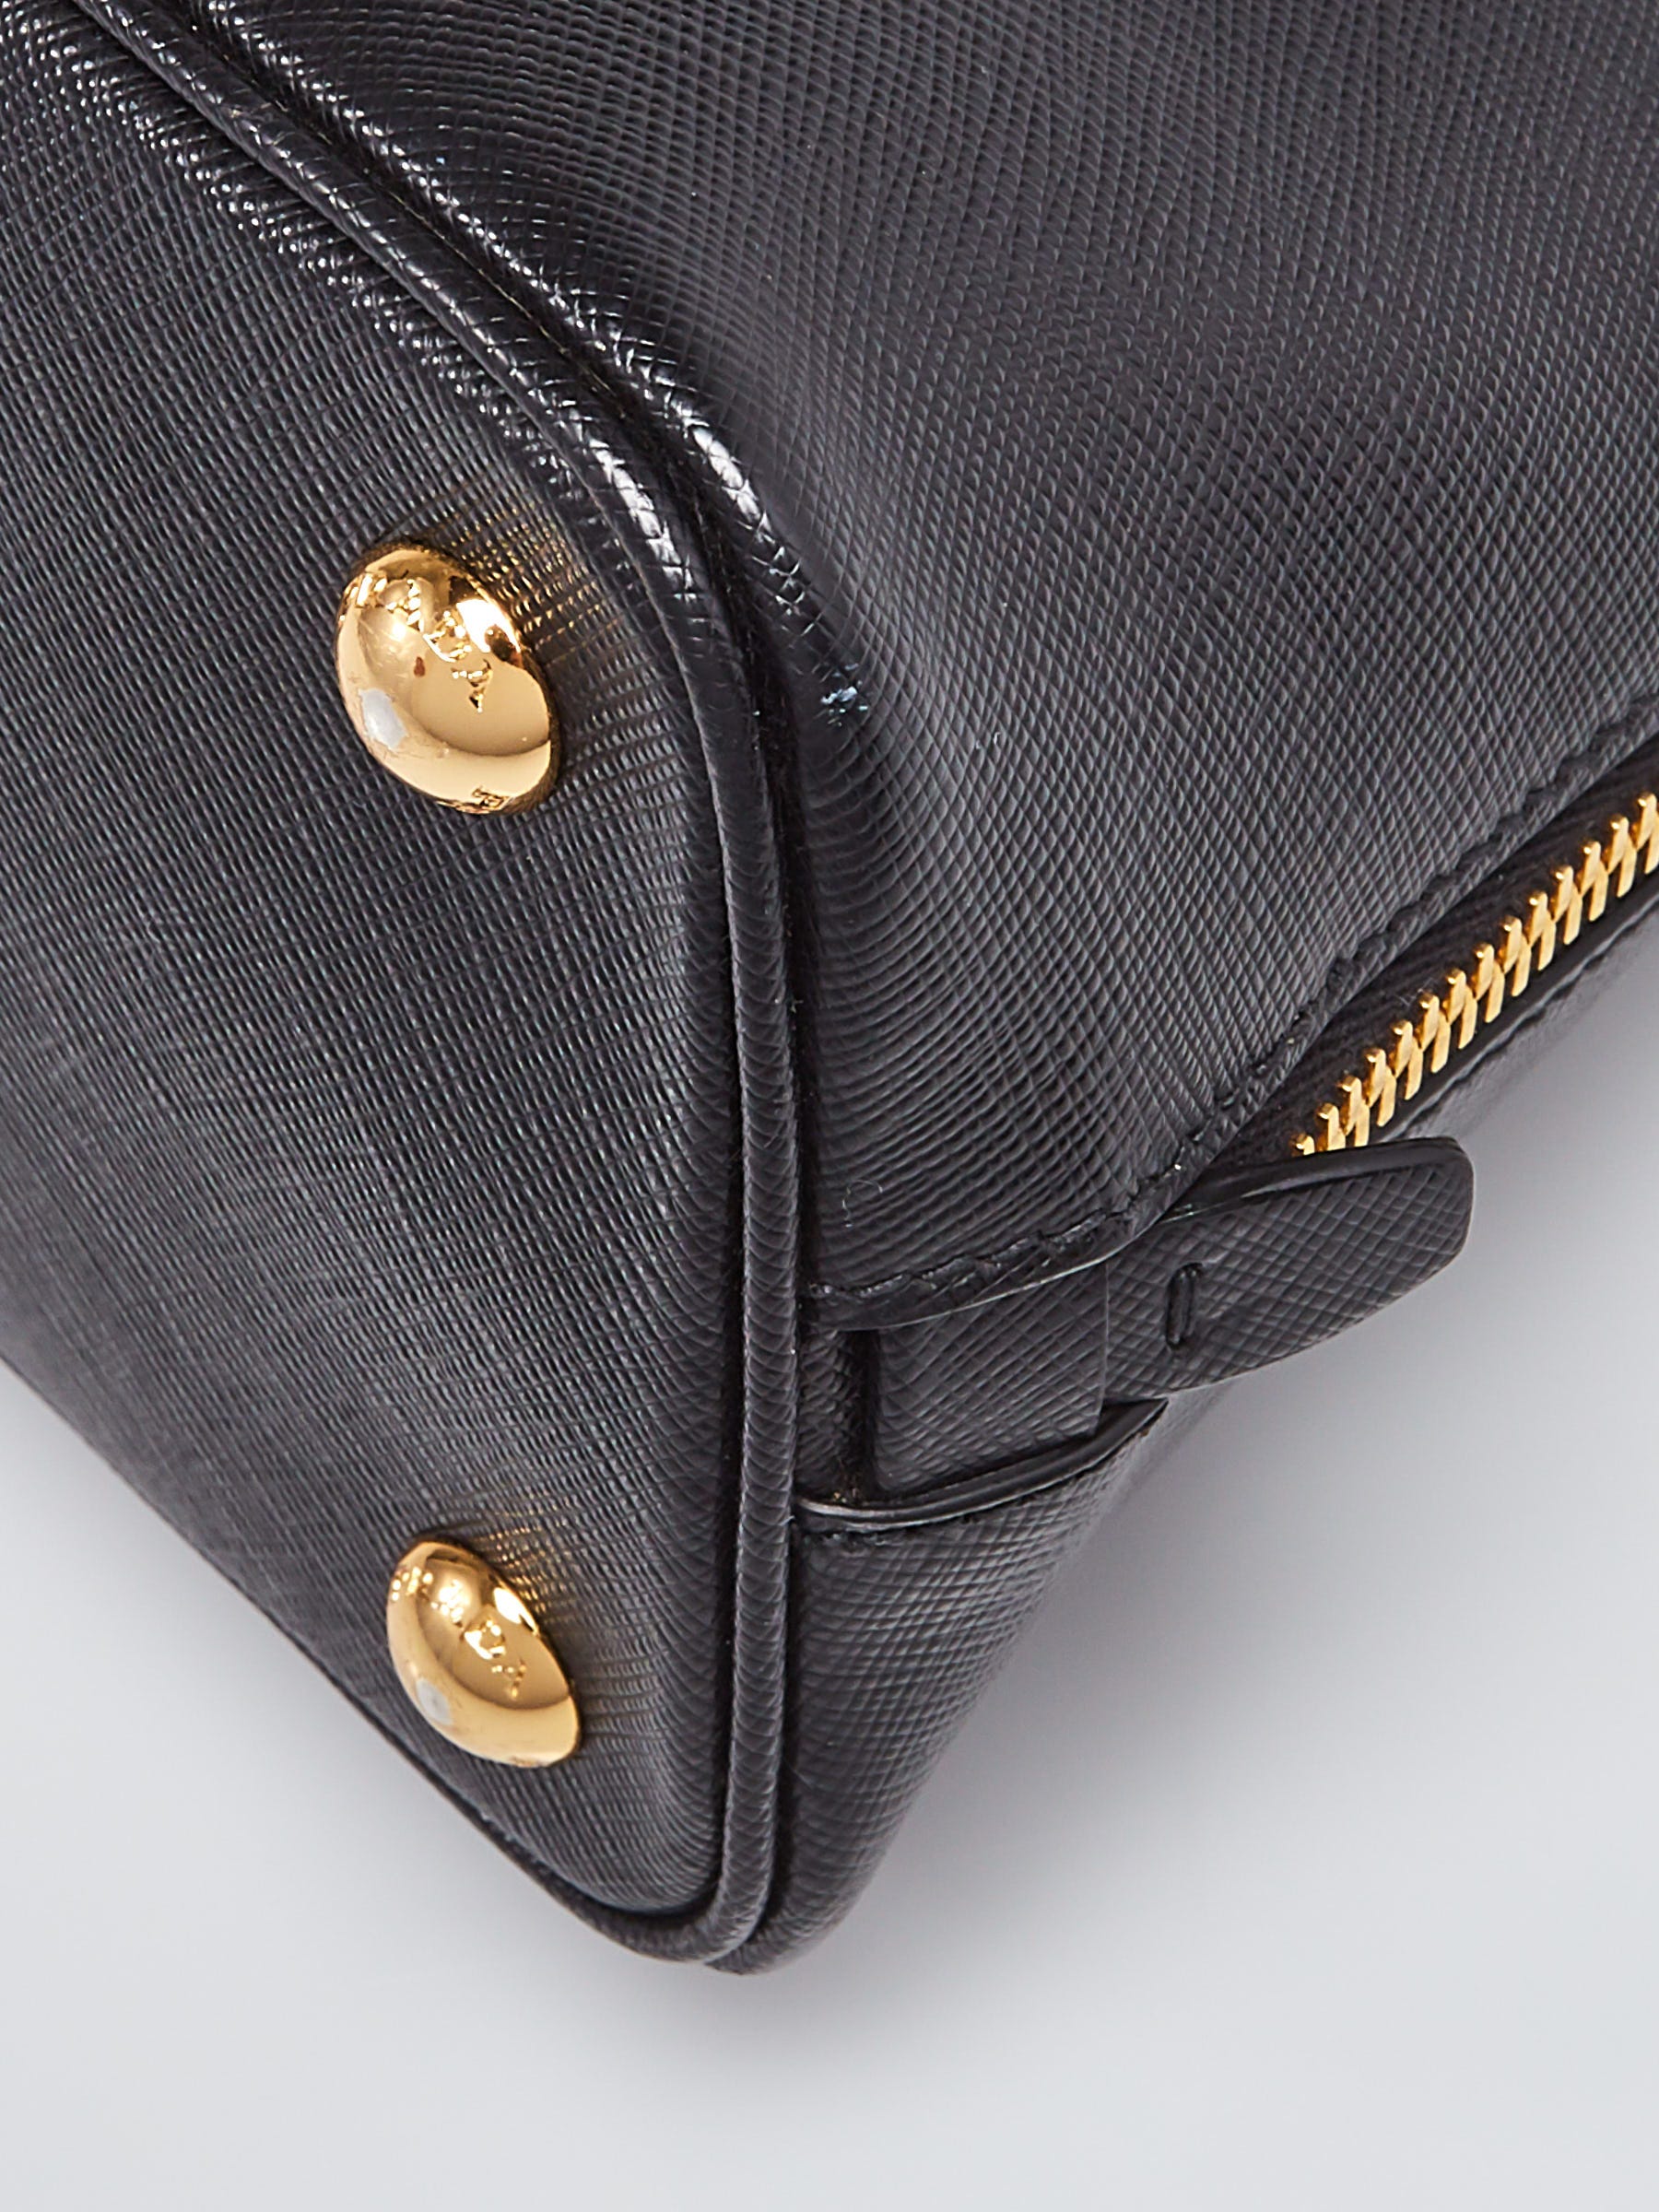 Prada Black Saffiano Leather Small Promenade Bag BL0838 - Yoogi's Closet